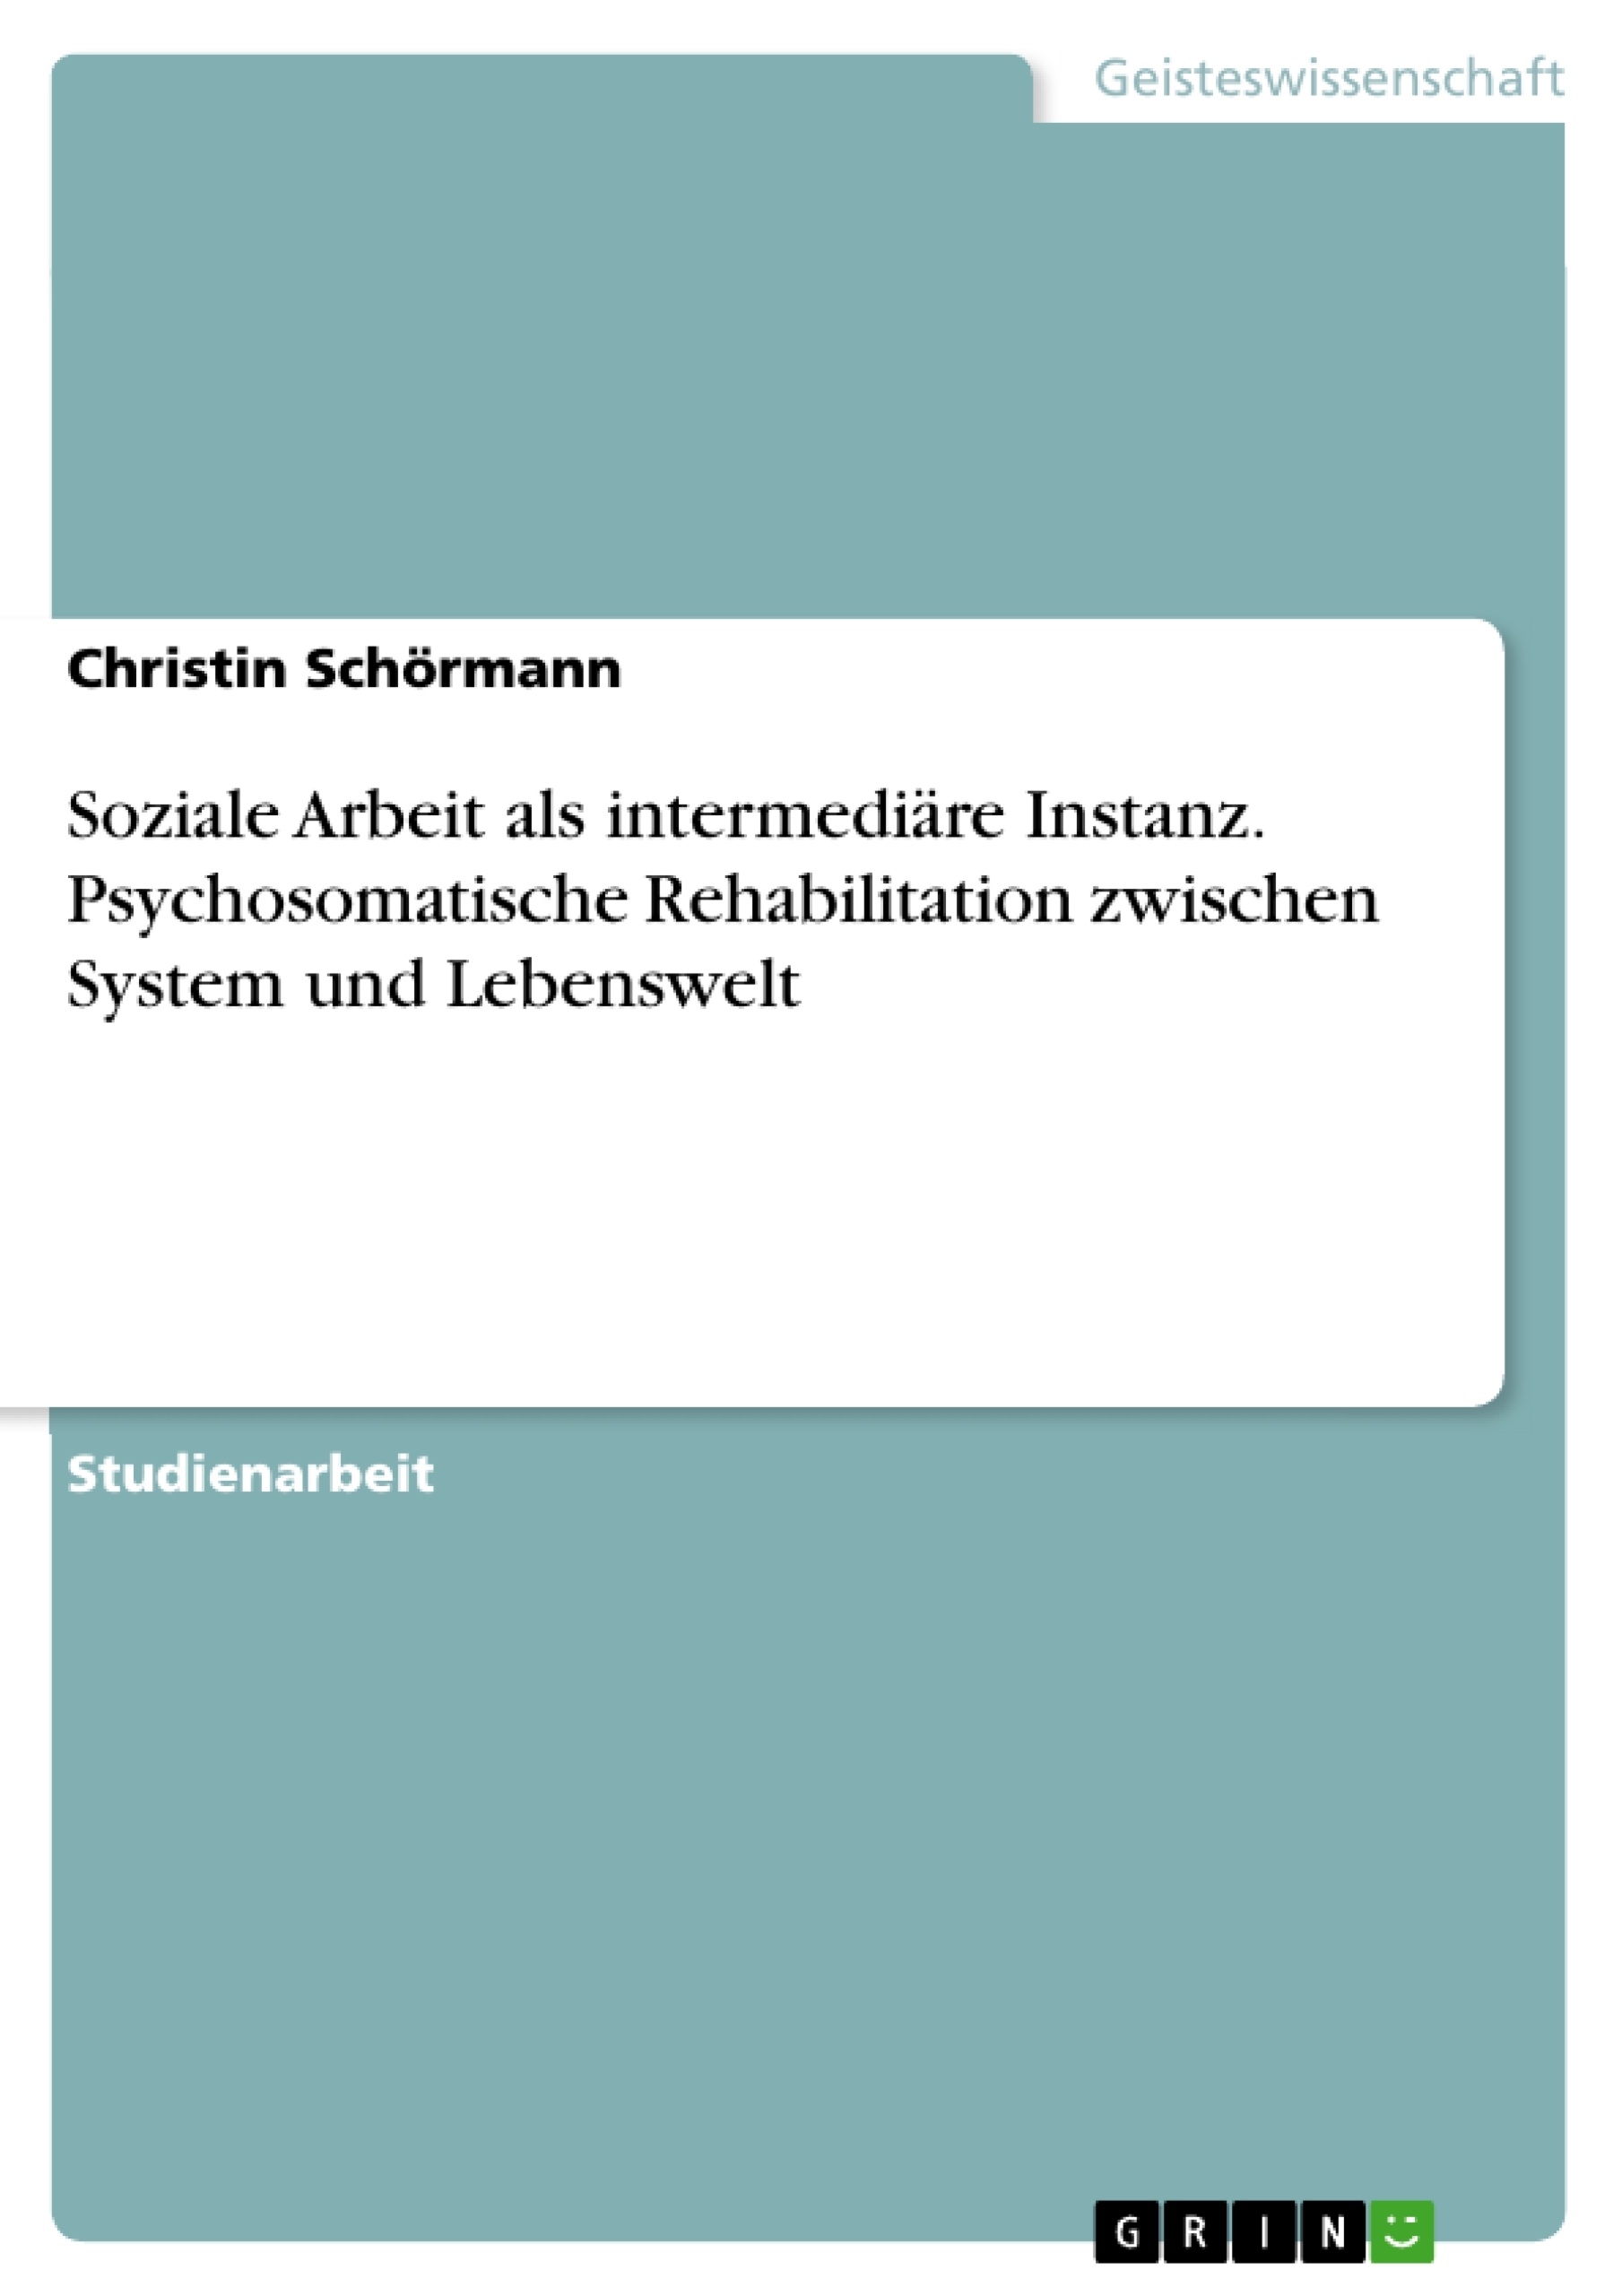 Title: Soziale Arbeit als intermediäre Instanz. Psychosomatische Rehabilitation zwischen System und Lebenswelt